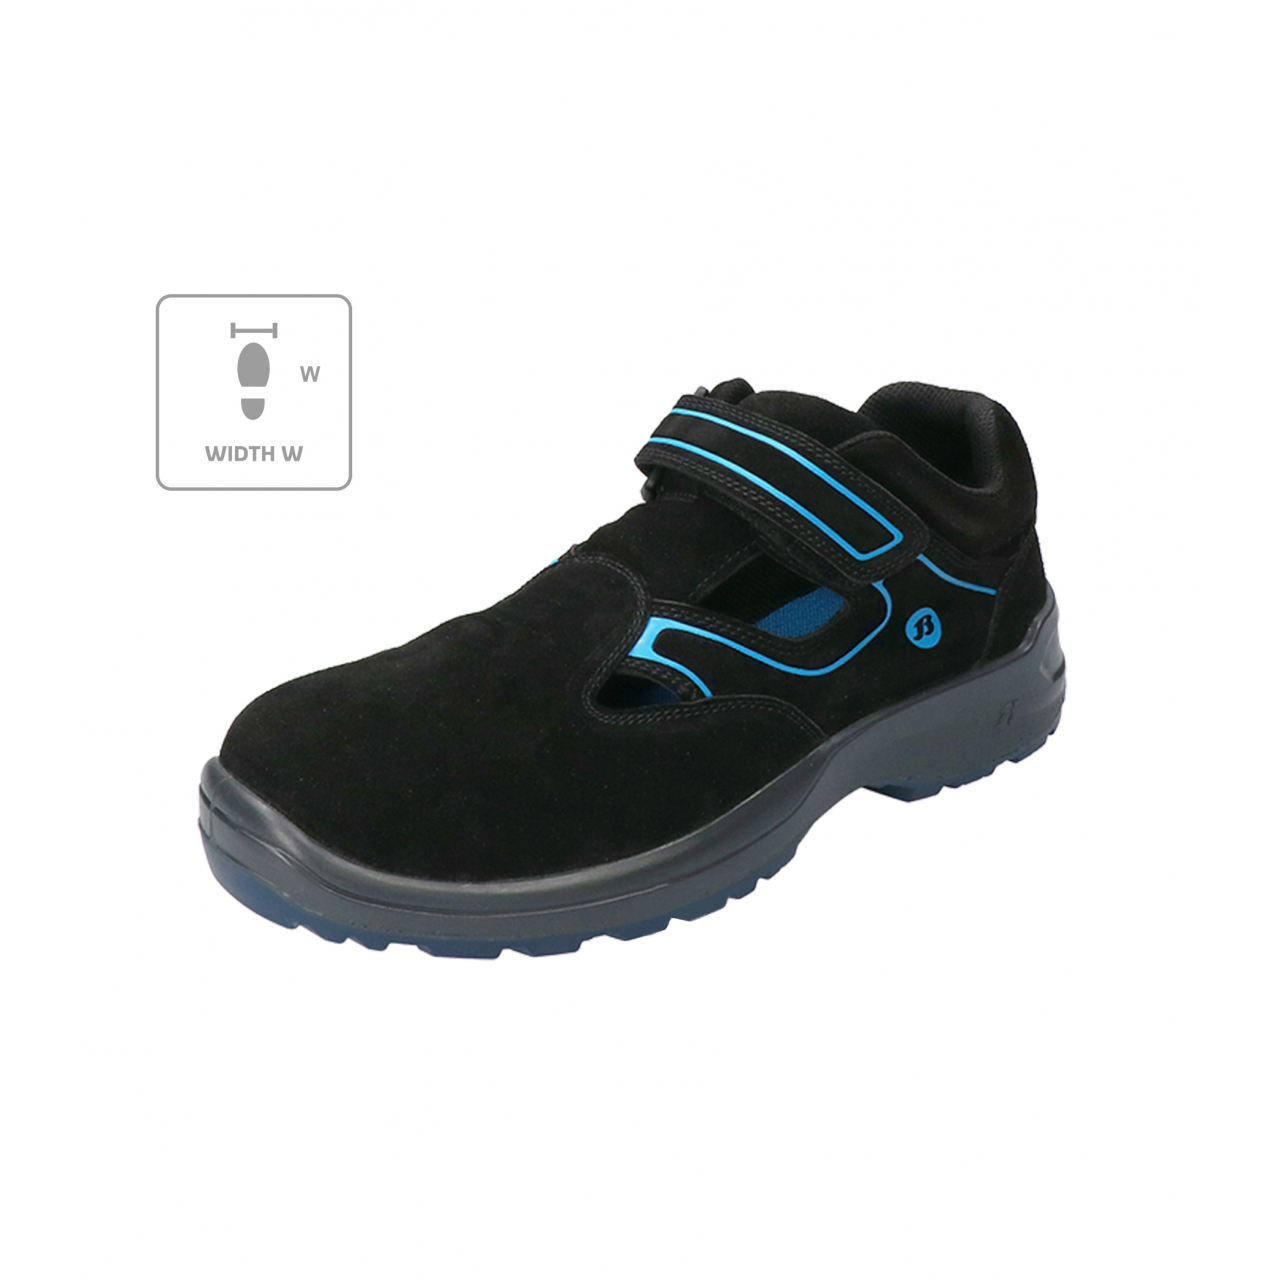 Sandále Bata Industrials Falcon ESD W - černé-modré, 40